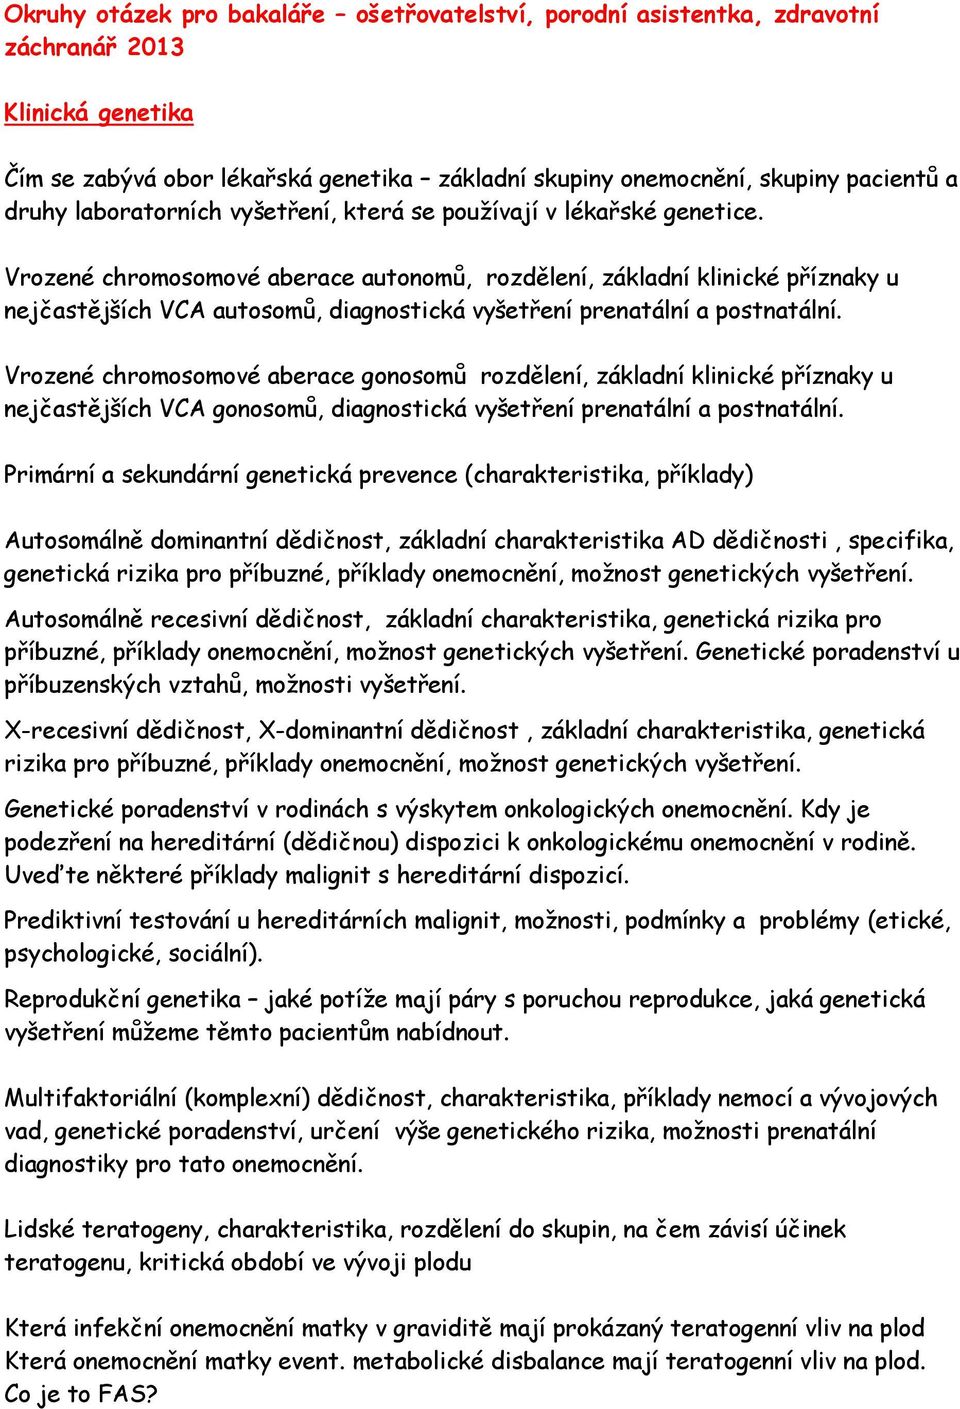 Klinická cytogenetika, molekulární cytogenetika, onkocytogenetika základy  Mgr. Marta Hanáková - PDF Stažení zdarma